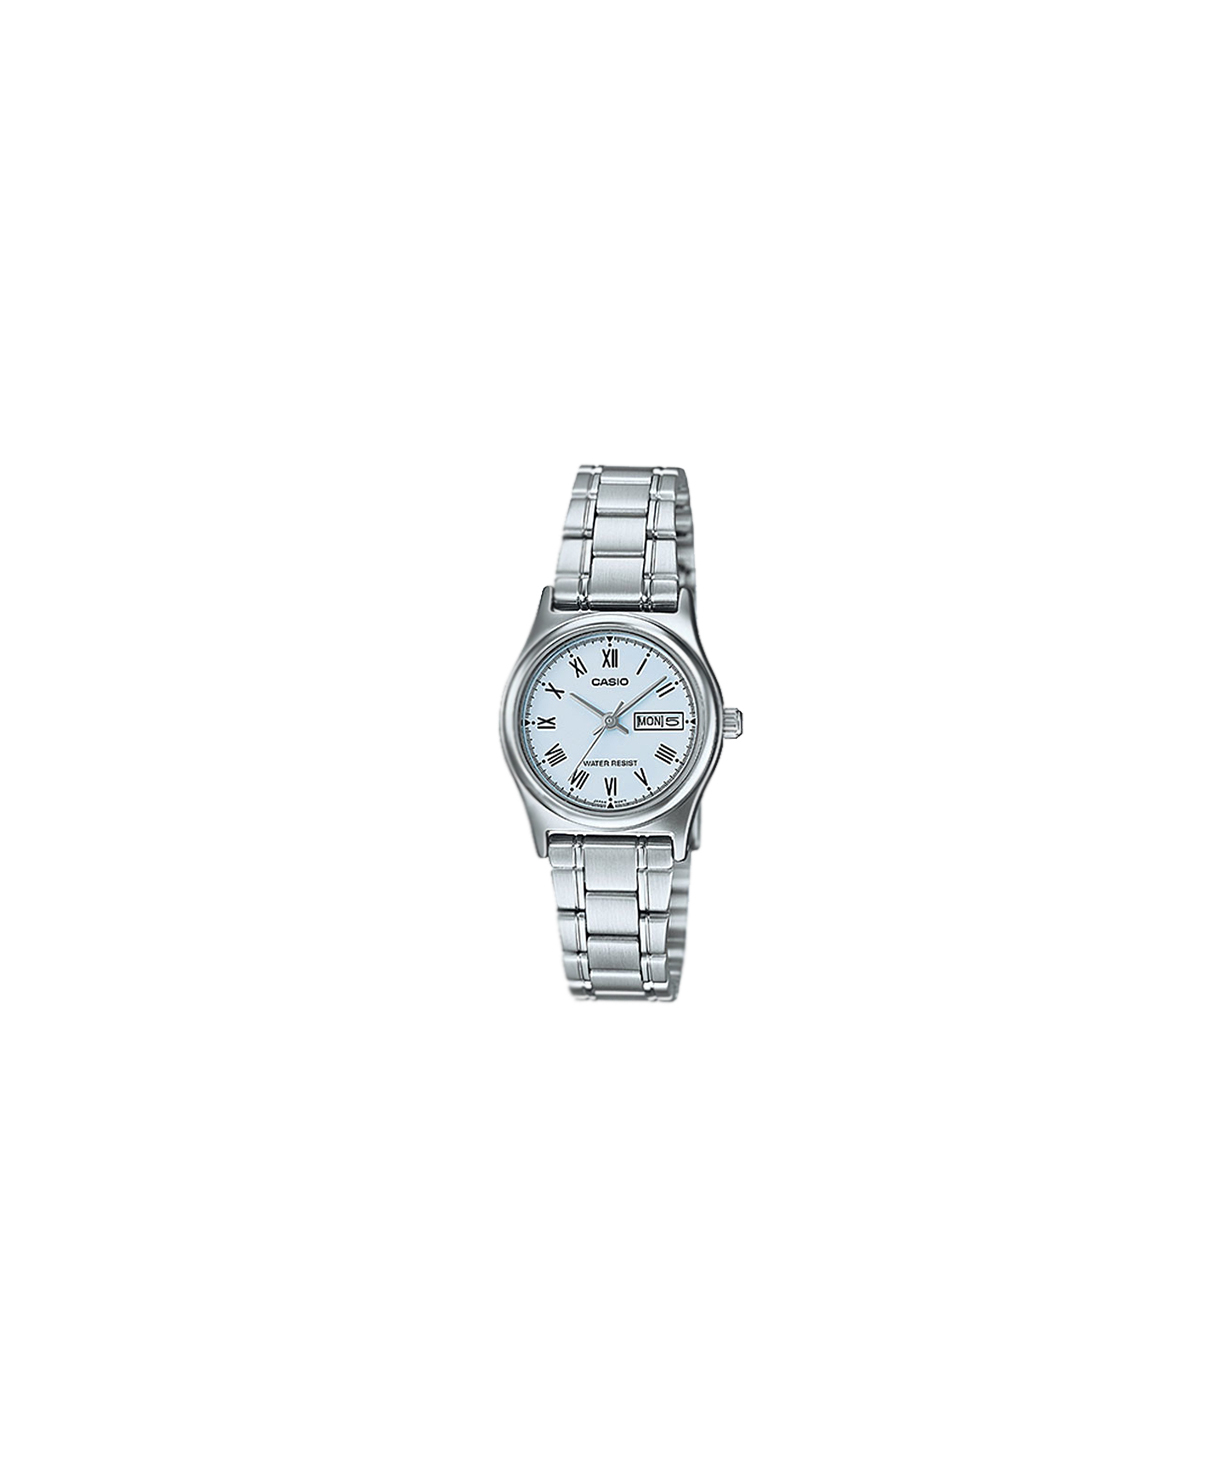 Ժամացույց  «Casio» ձեռքի  LTP-V006D-2BUDF